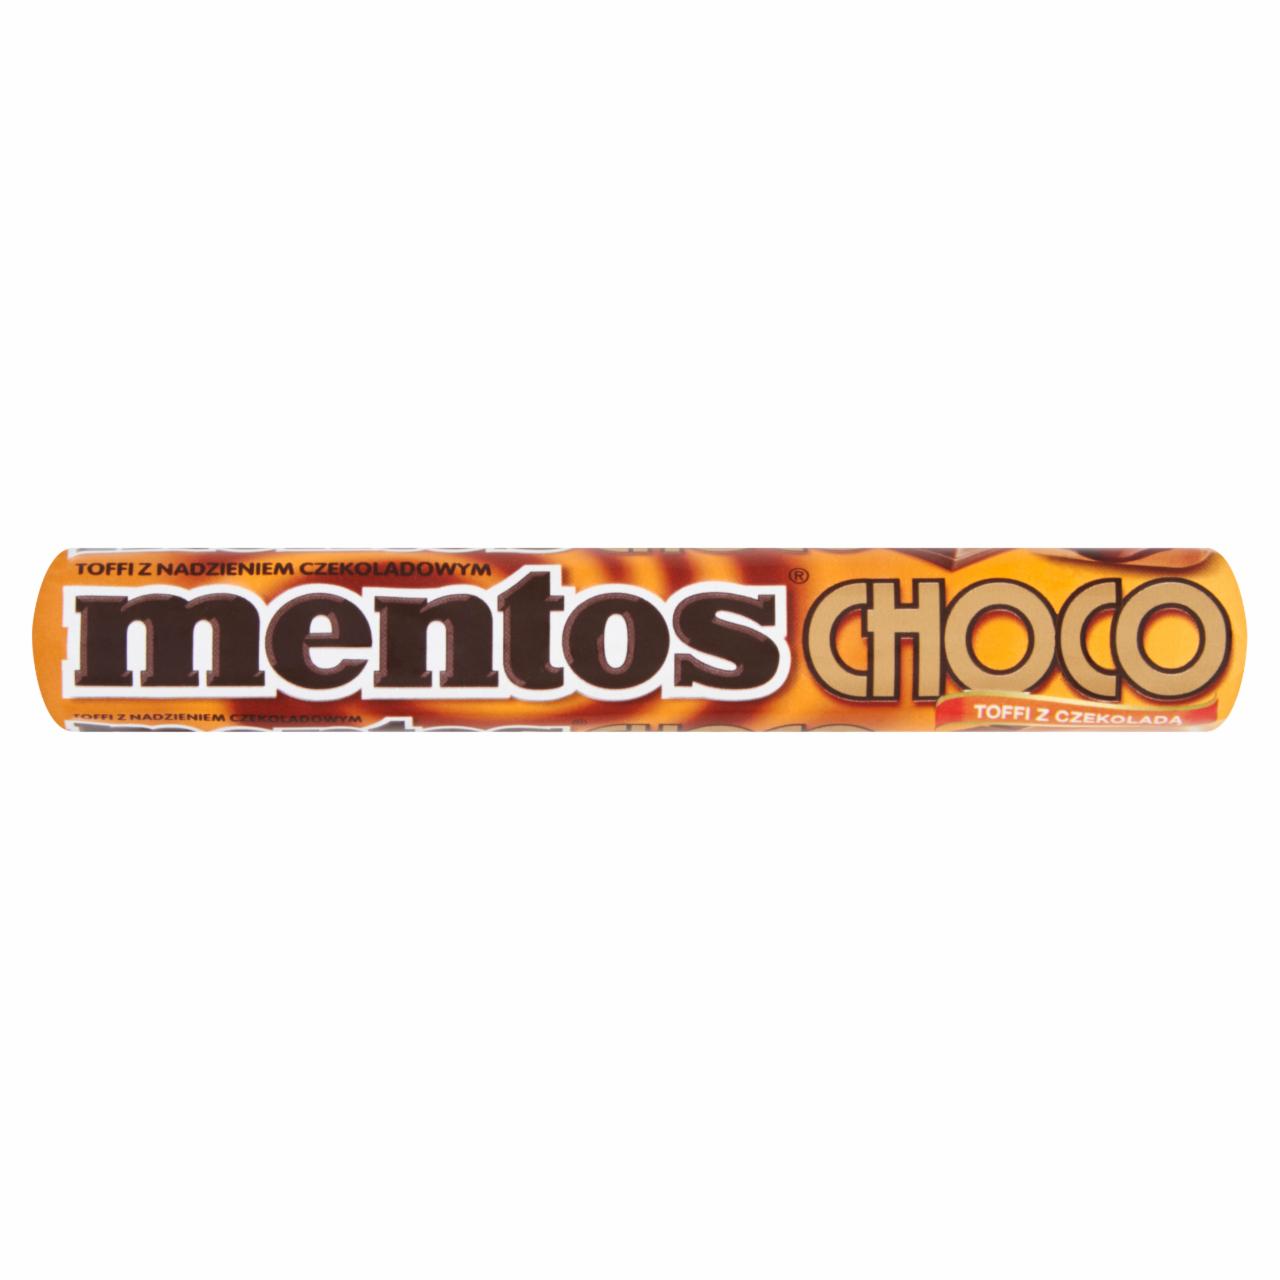 Zdjęcia - Mentos Choco Toffi z nadzieniem czekoladowym 38 g